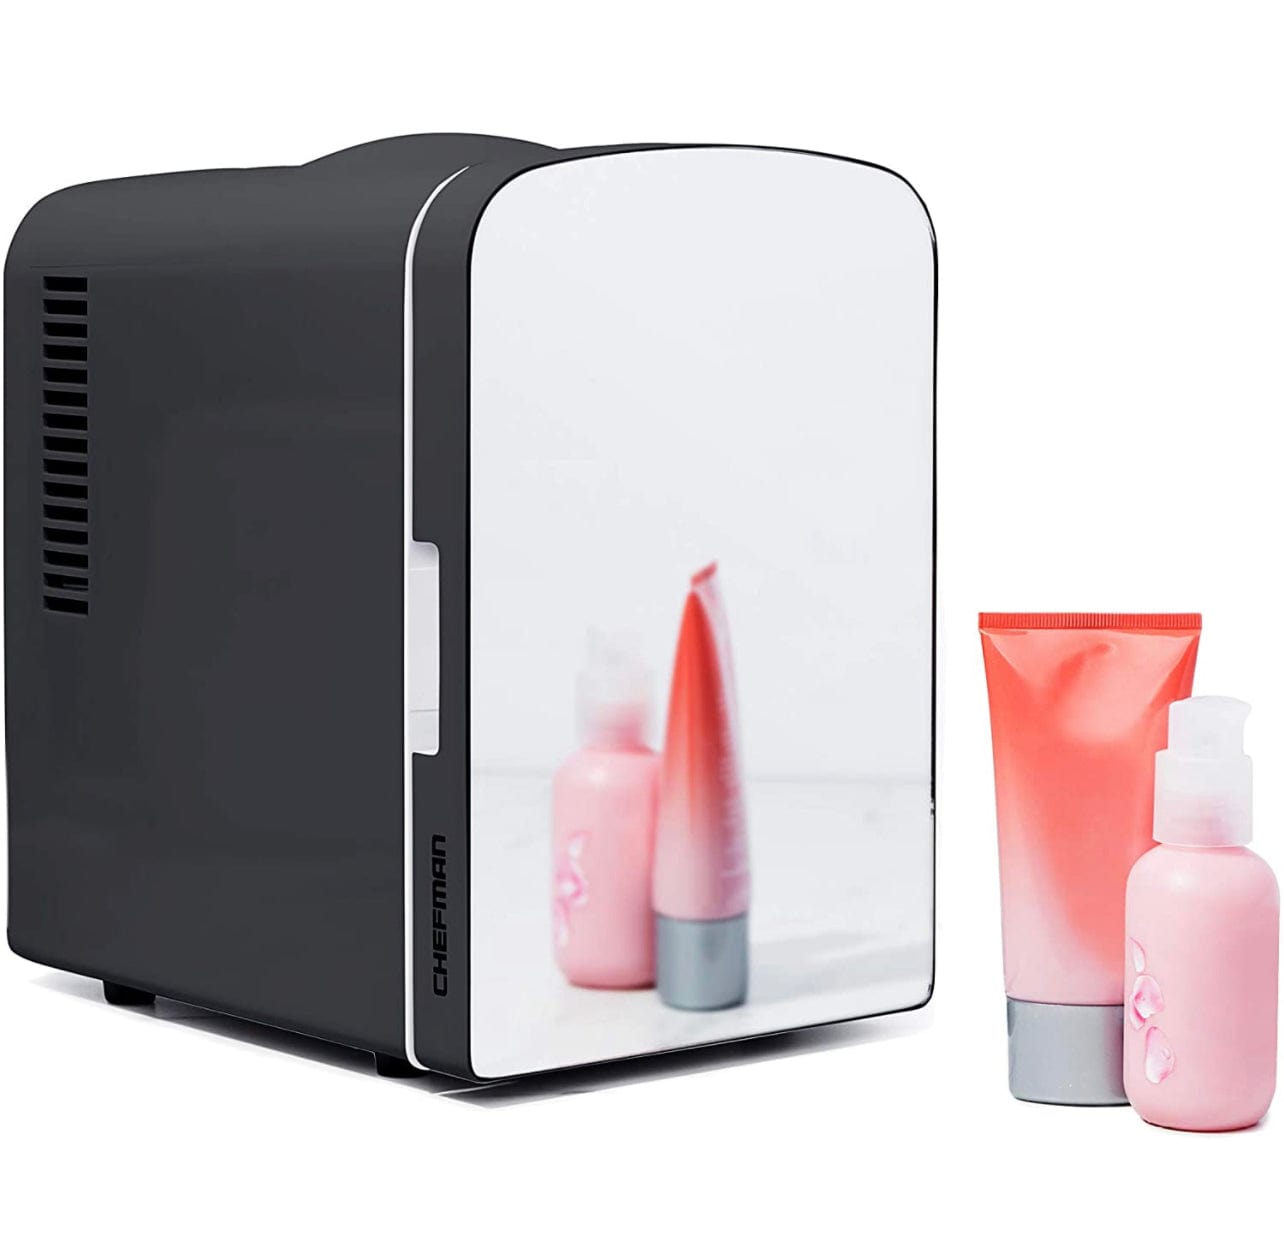 Mini réfrigérateur pour cosmétiques (Skincare Beauty Fridge